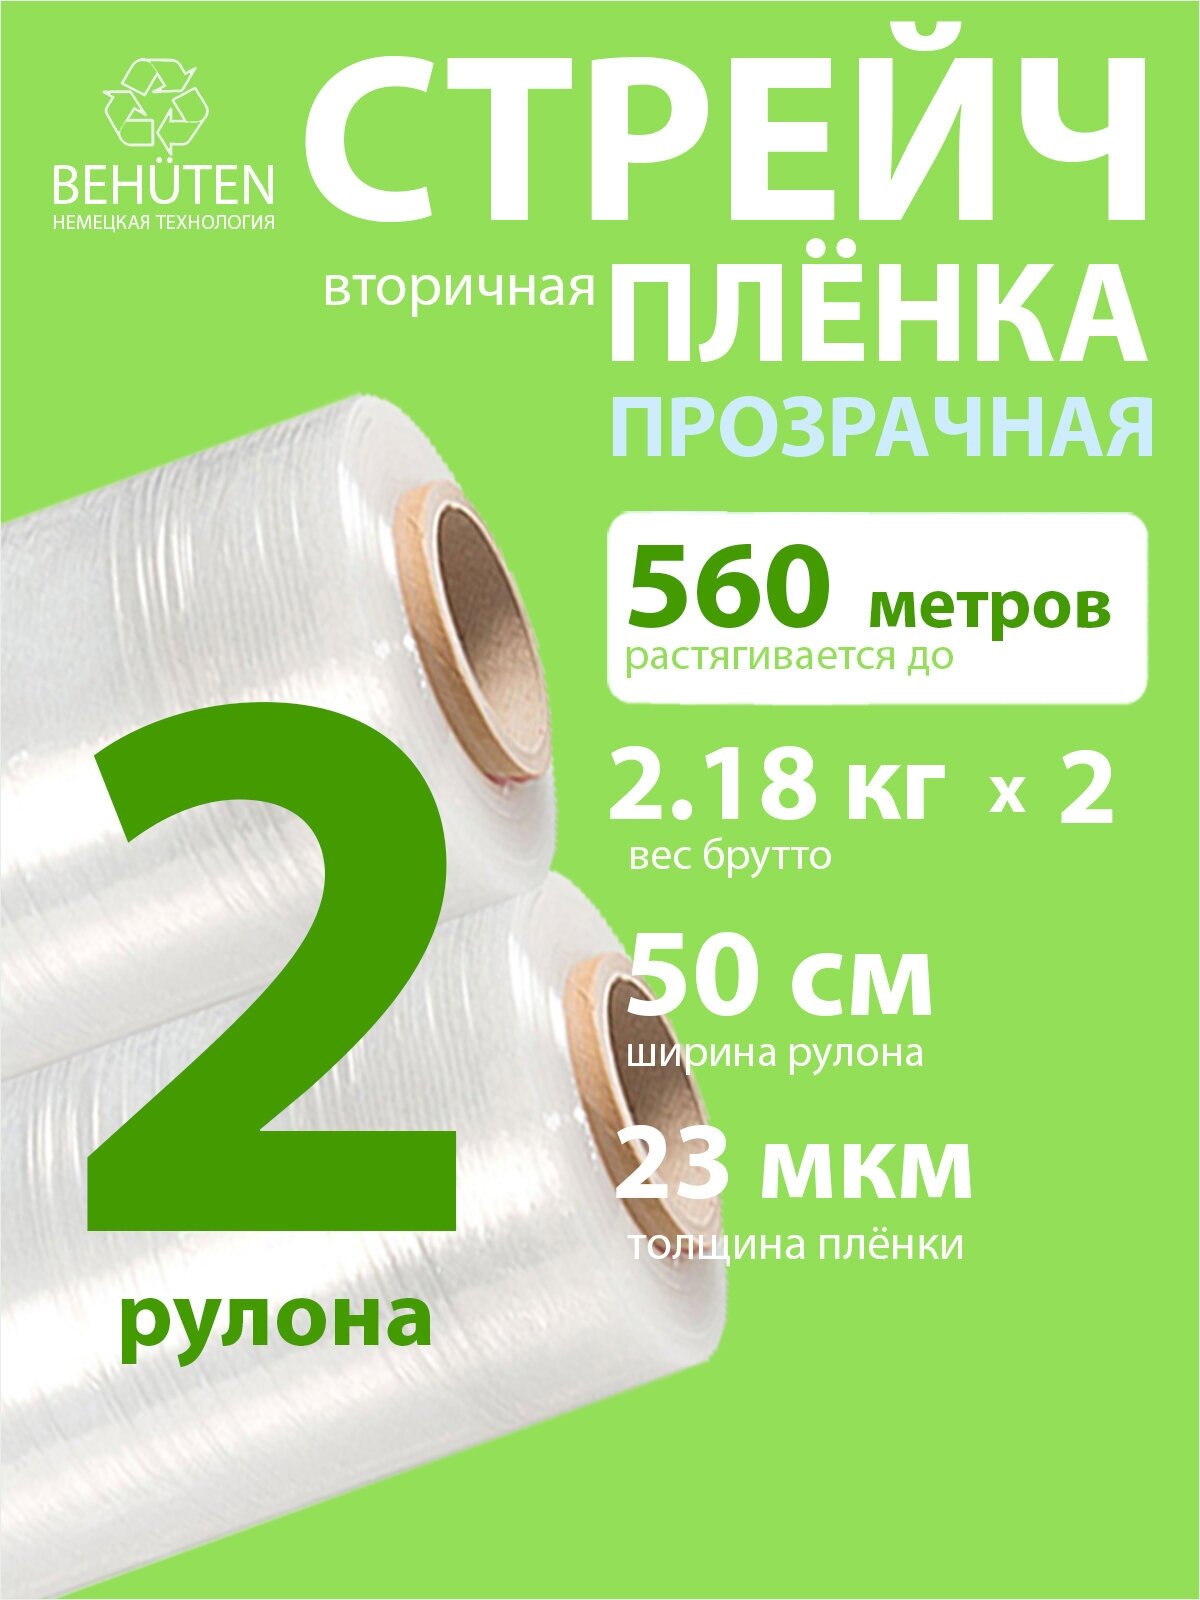 Стрейч пленка BEHUTEN упаковочная прозрачная 50 см 23 мкм 2,18 кг вторичная, 2 рулона